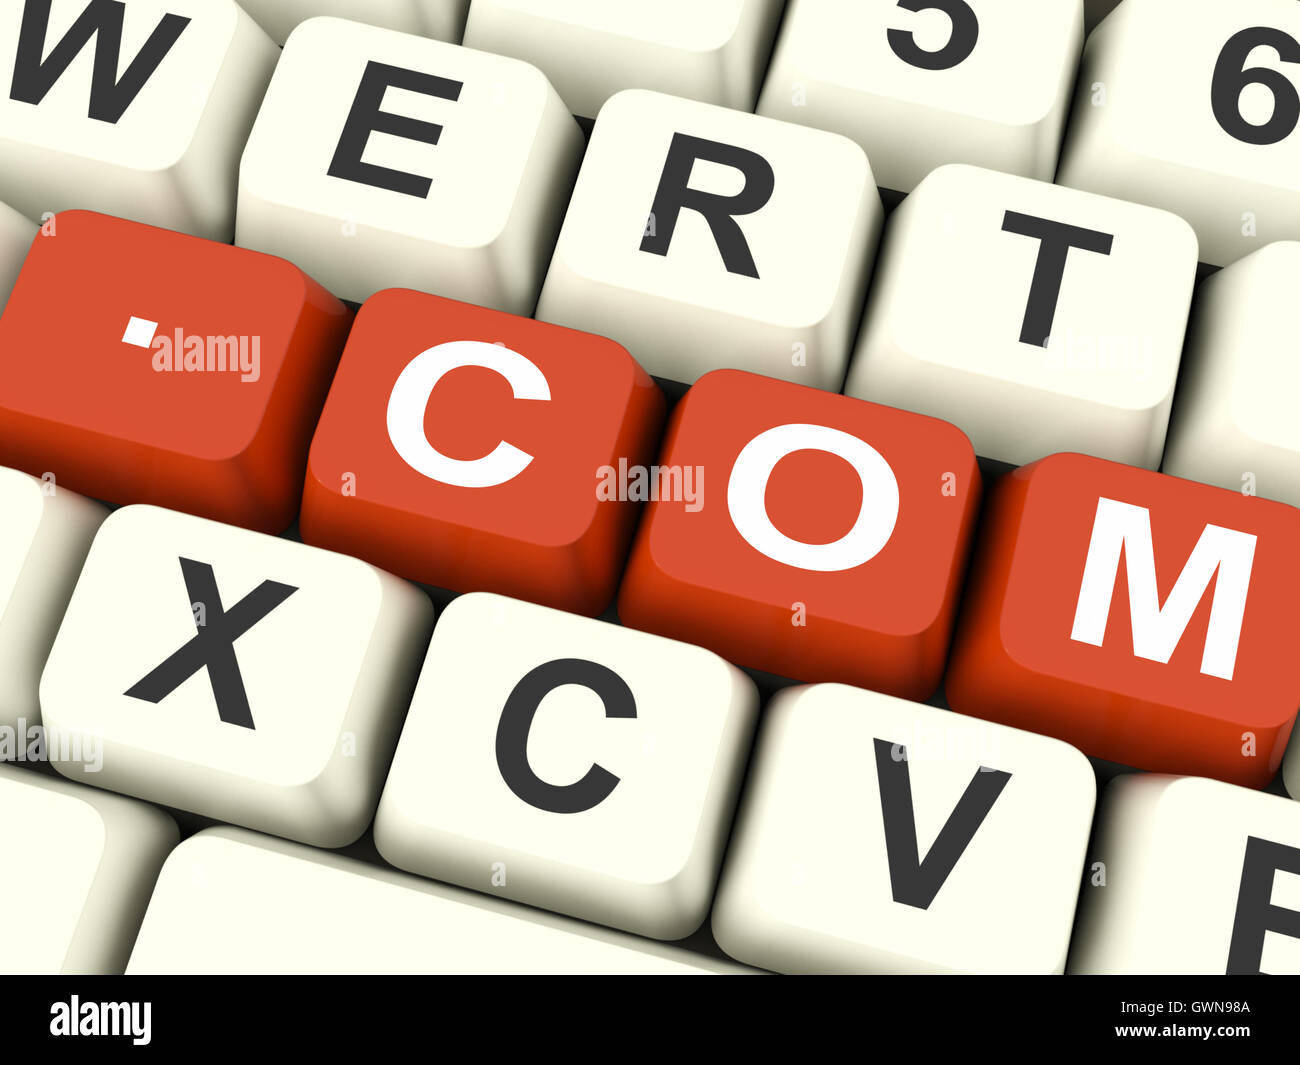 Com Key Shows Web Domain Name Stock Photo